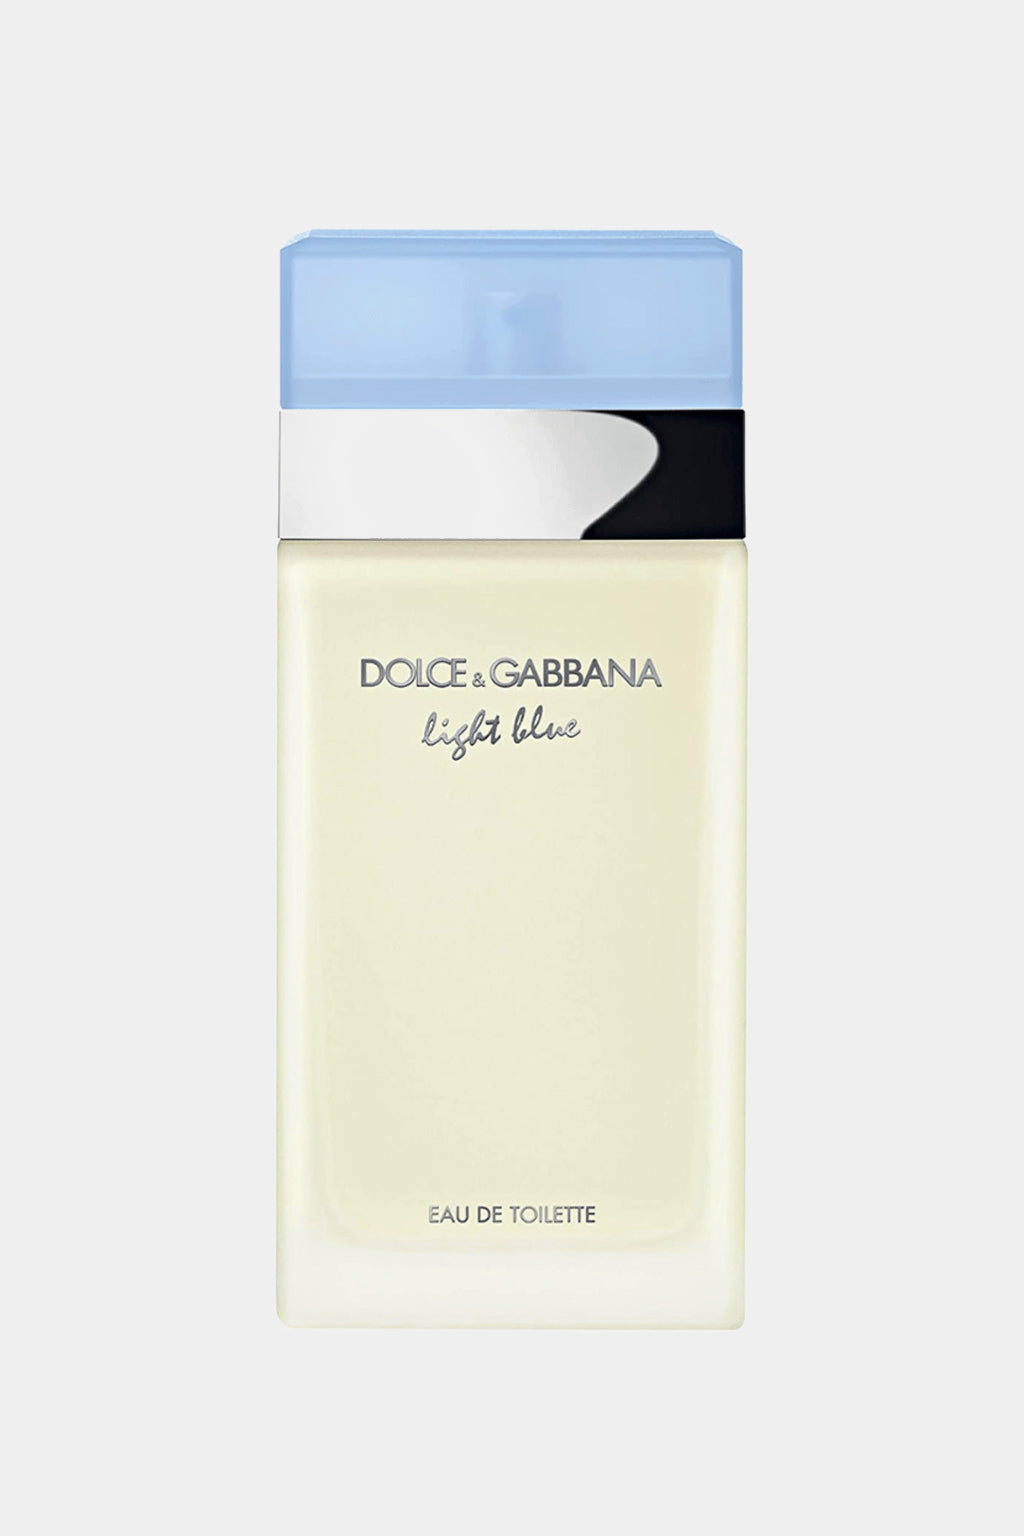 Dolce & Gabbana - Light Blue Eau de Toilette